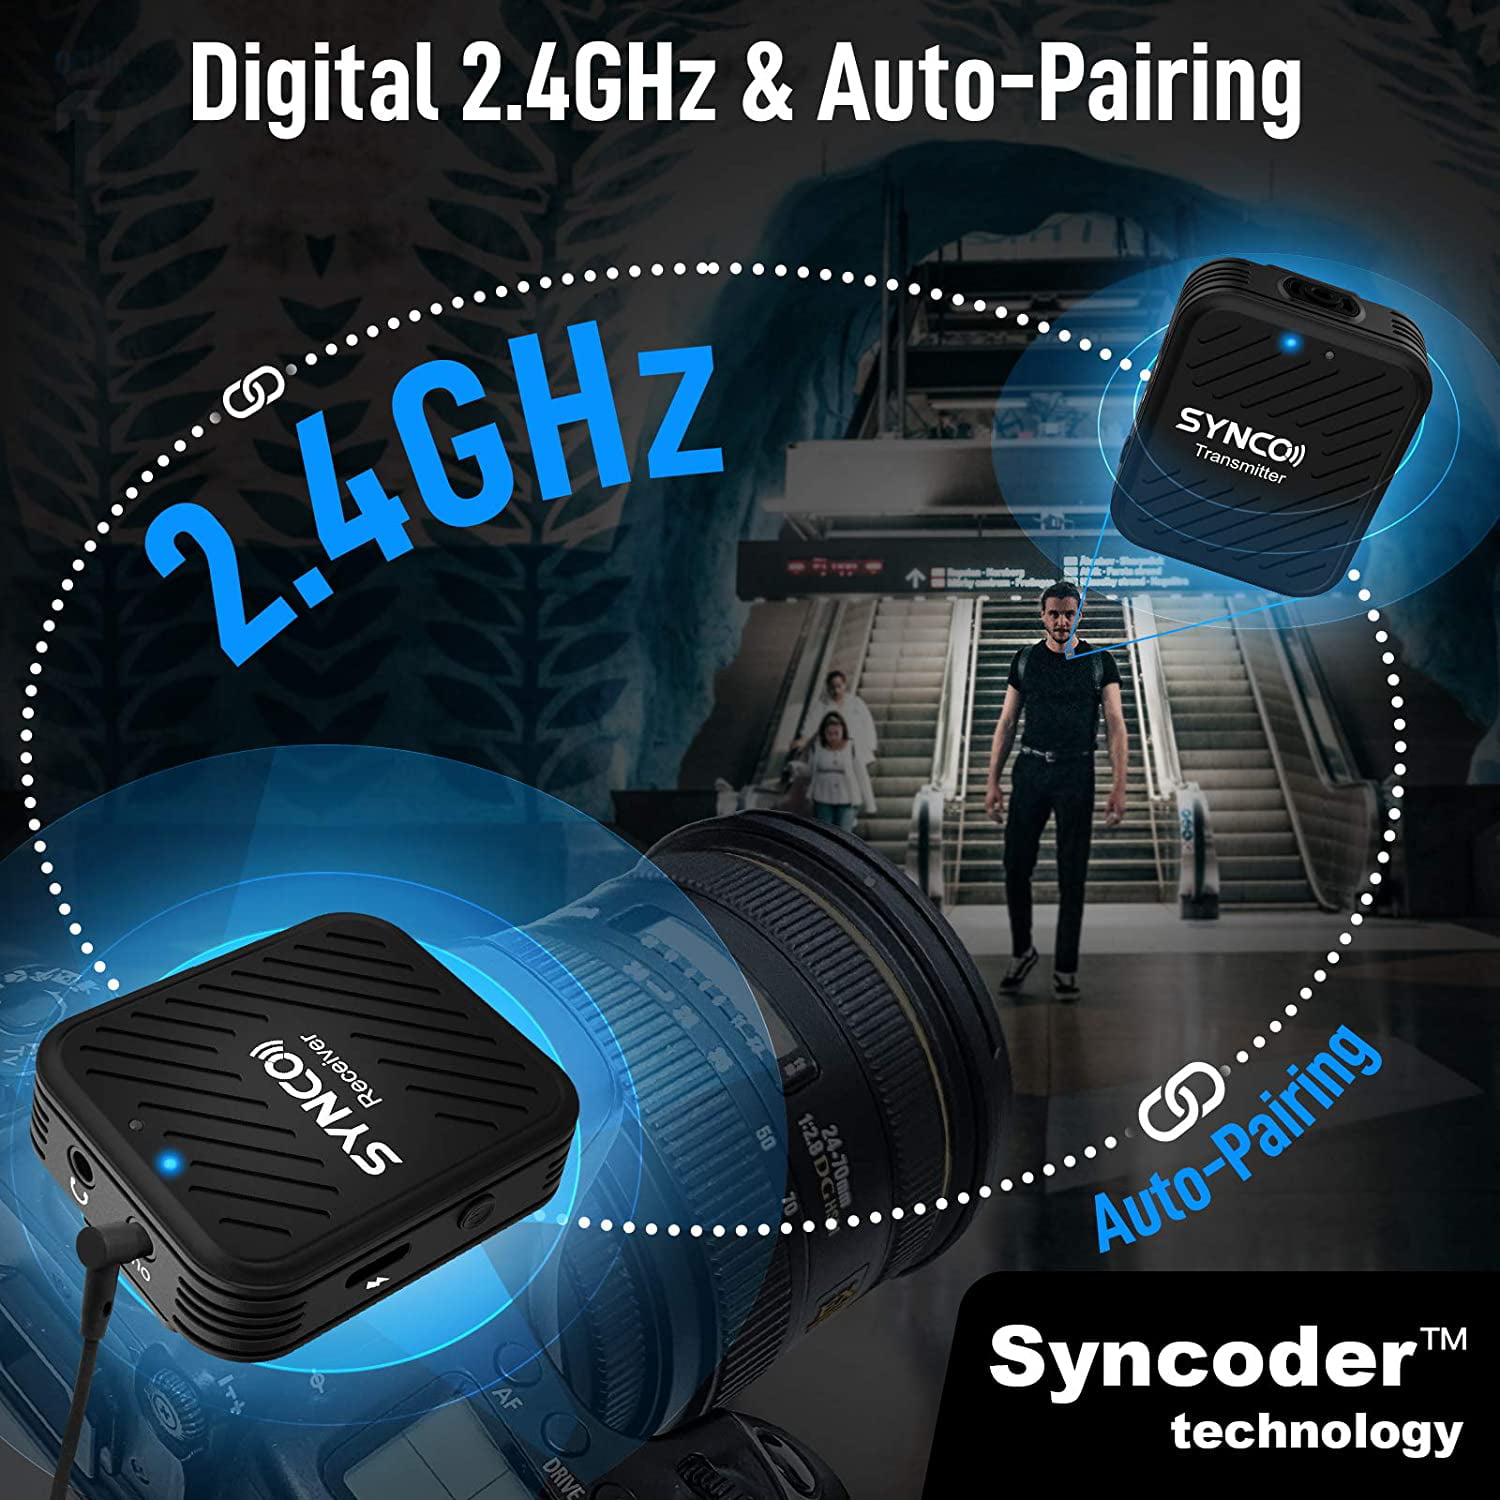 SYNCO-Système de microphone Lavalier sans fil G1 G1A1 G1A2, pour  smartphone, ordinateur portable, DSLR, tablette